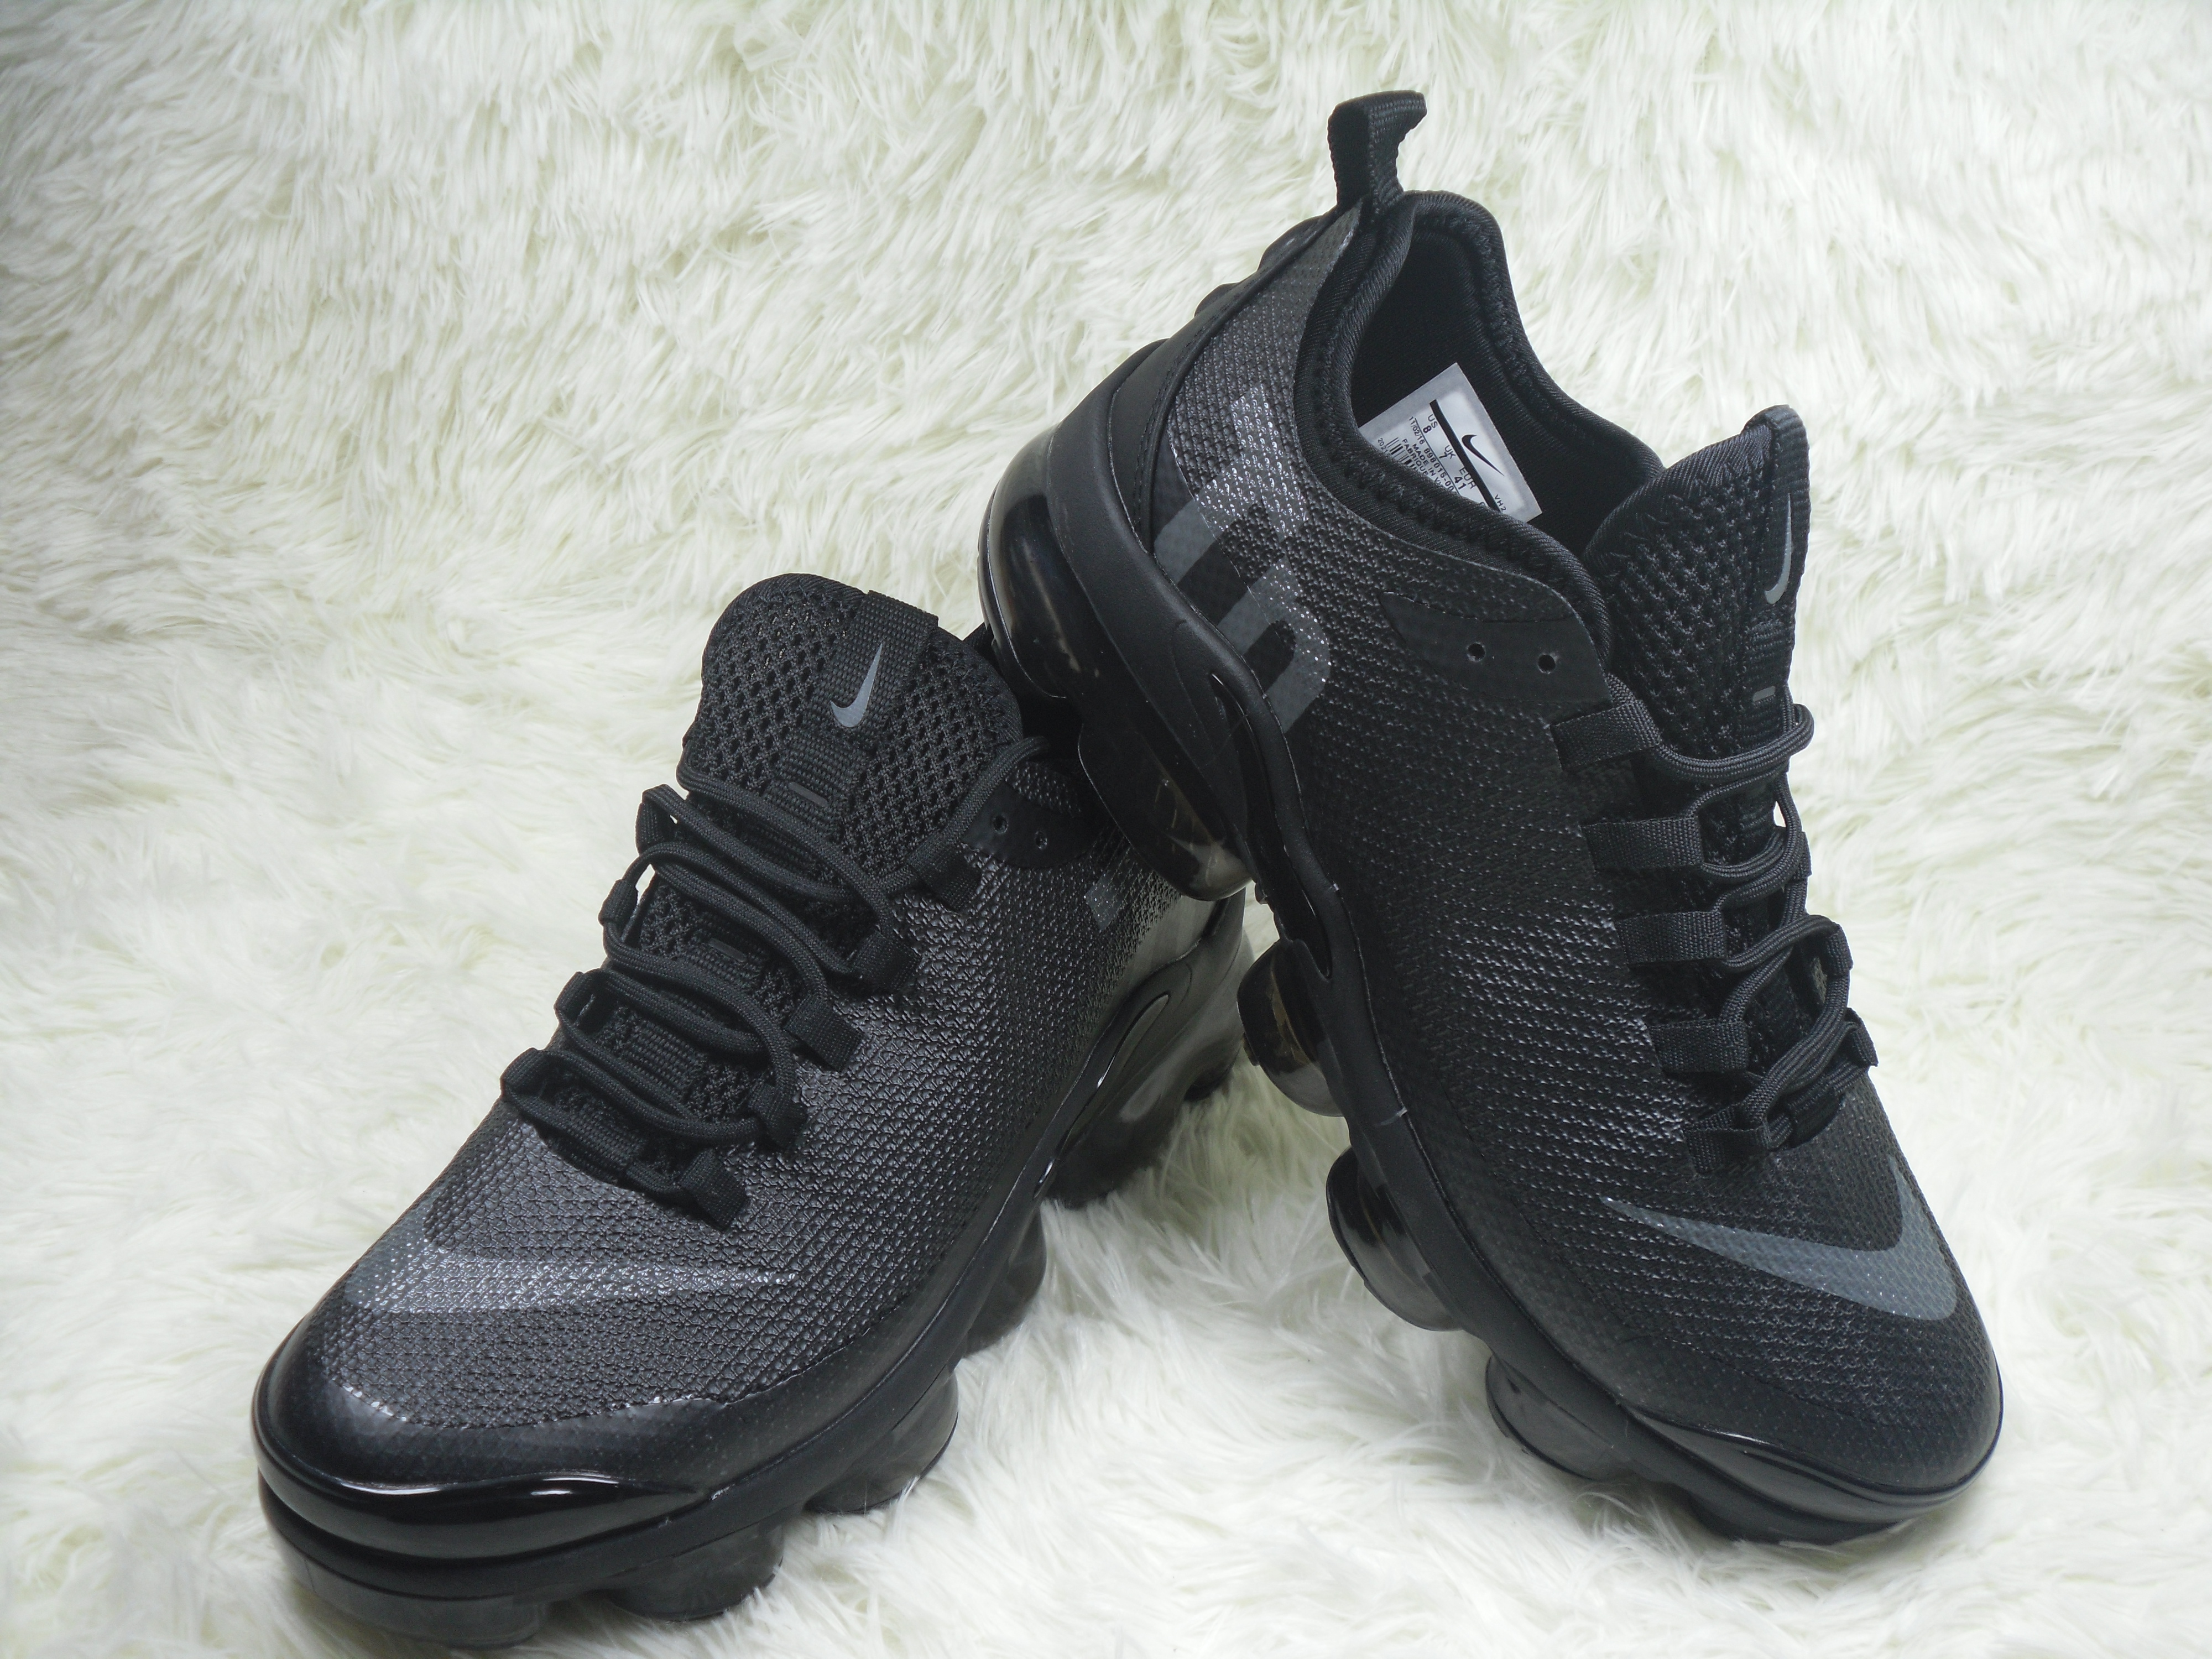 Nike Air Max Plu TN Summer All Black Shoes